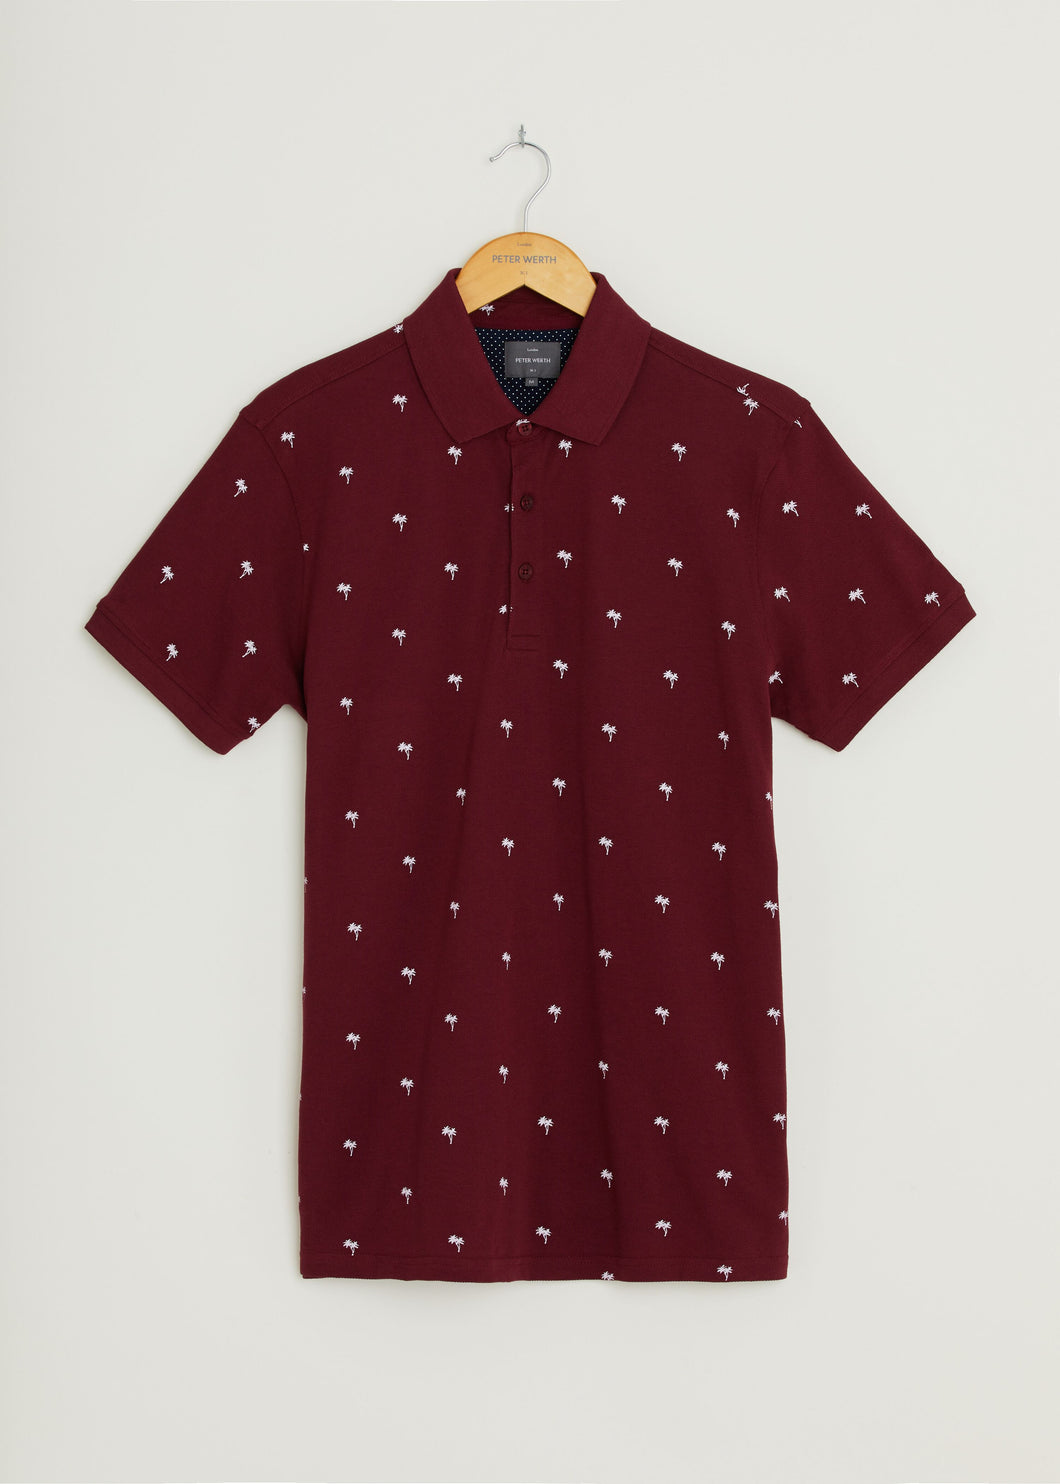 Tropic Polo Shirt - Burgundy